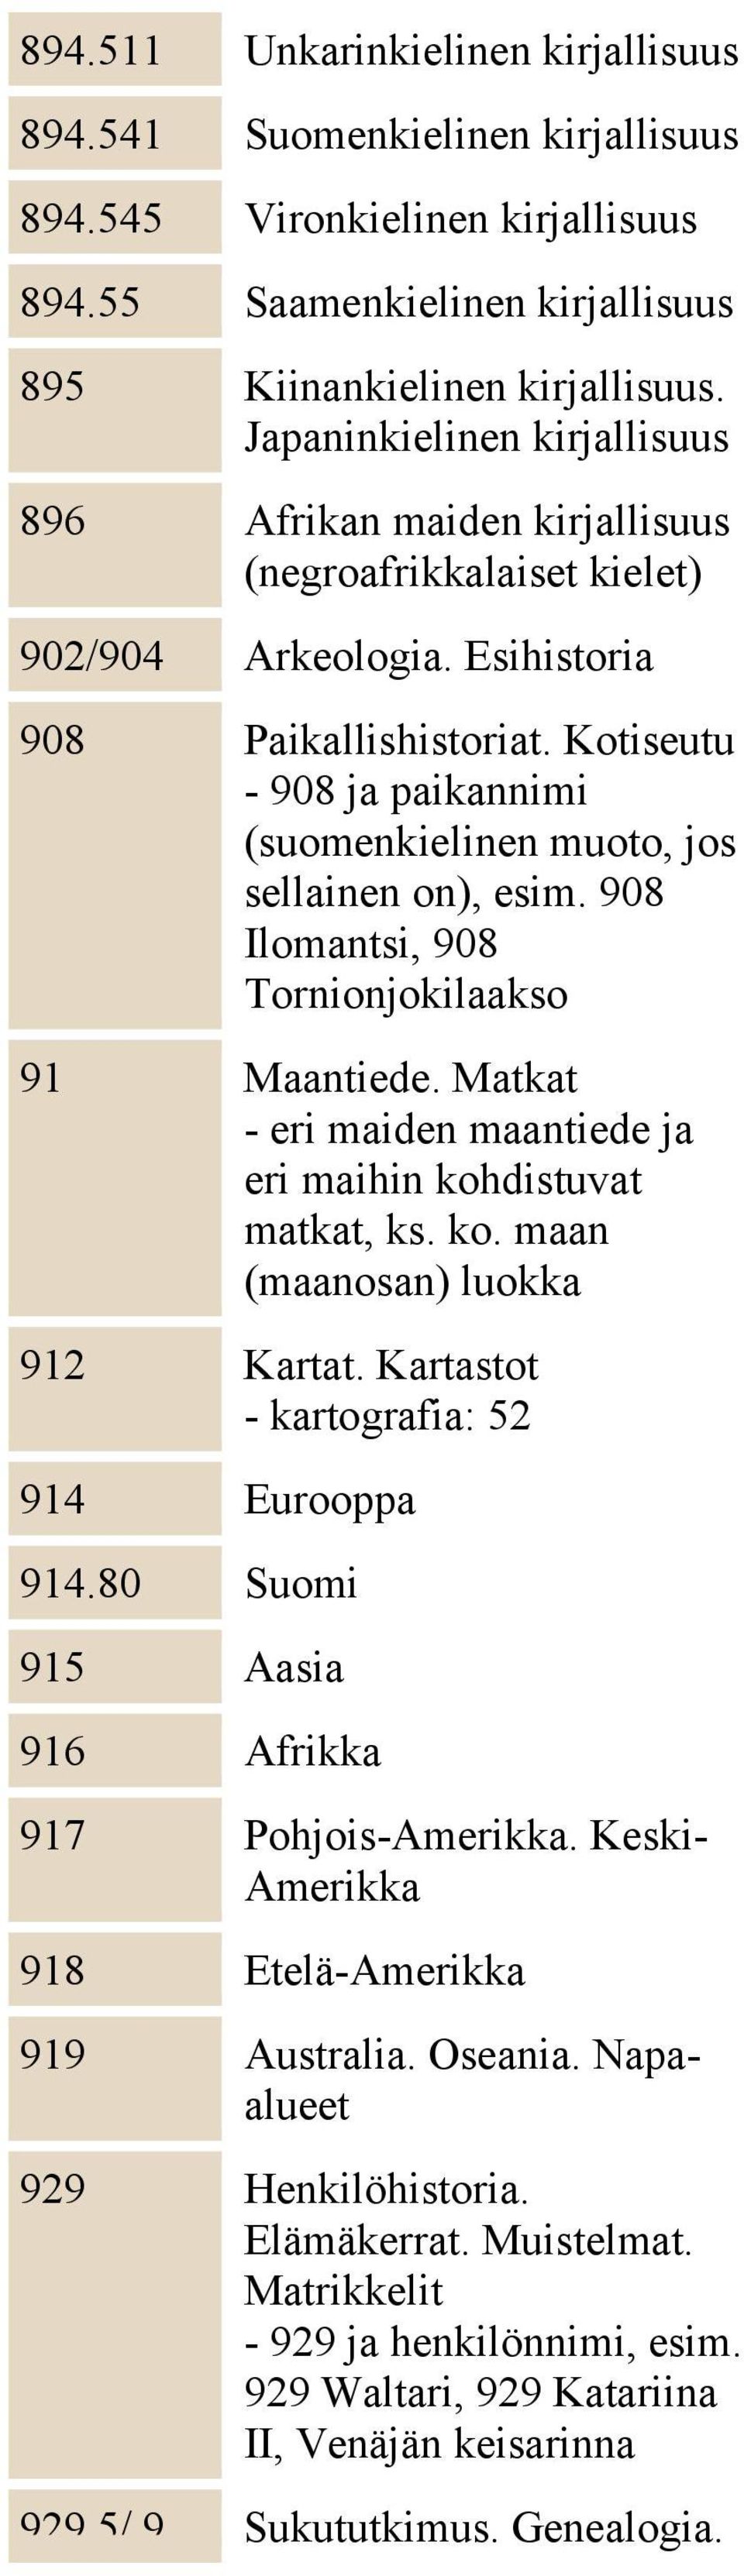 Kotiseutu - 908 ja paikannimi (suomenkielinen muoto, jos sellainen on), esim. 908 Ilomantsi, 908 Tornionjokilaakso 91 Maantiede. Matkat - eri maiden maantiede ja eri maihin koh